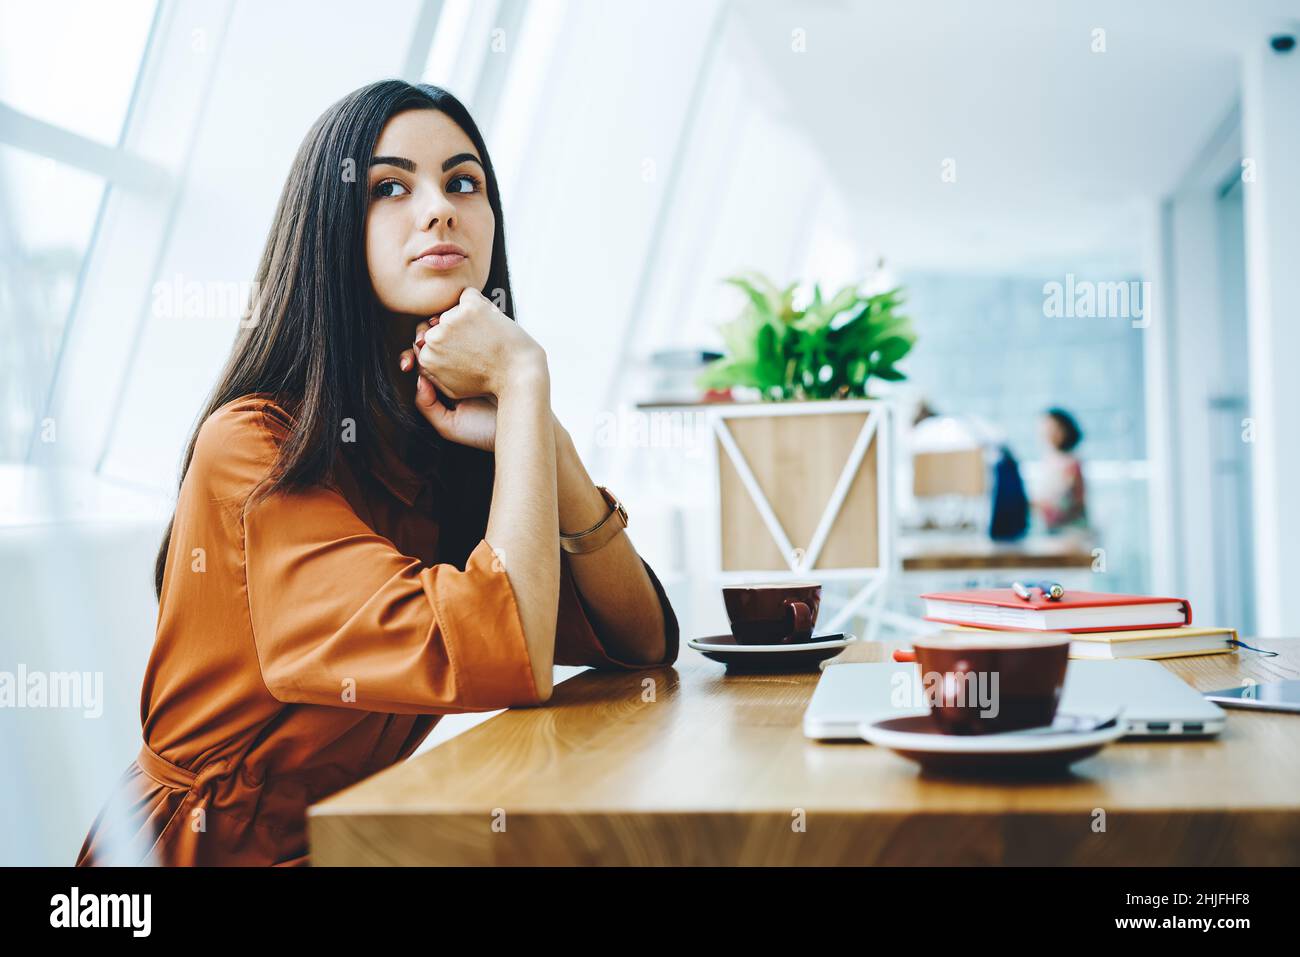 Femme pensive au café pendant la pause-café Banque D'Images